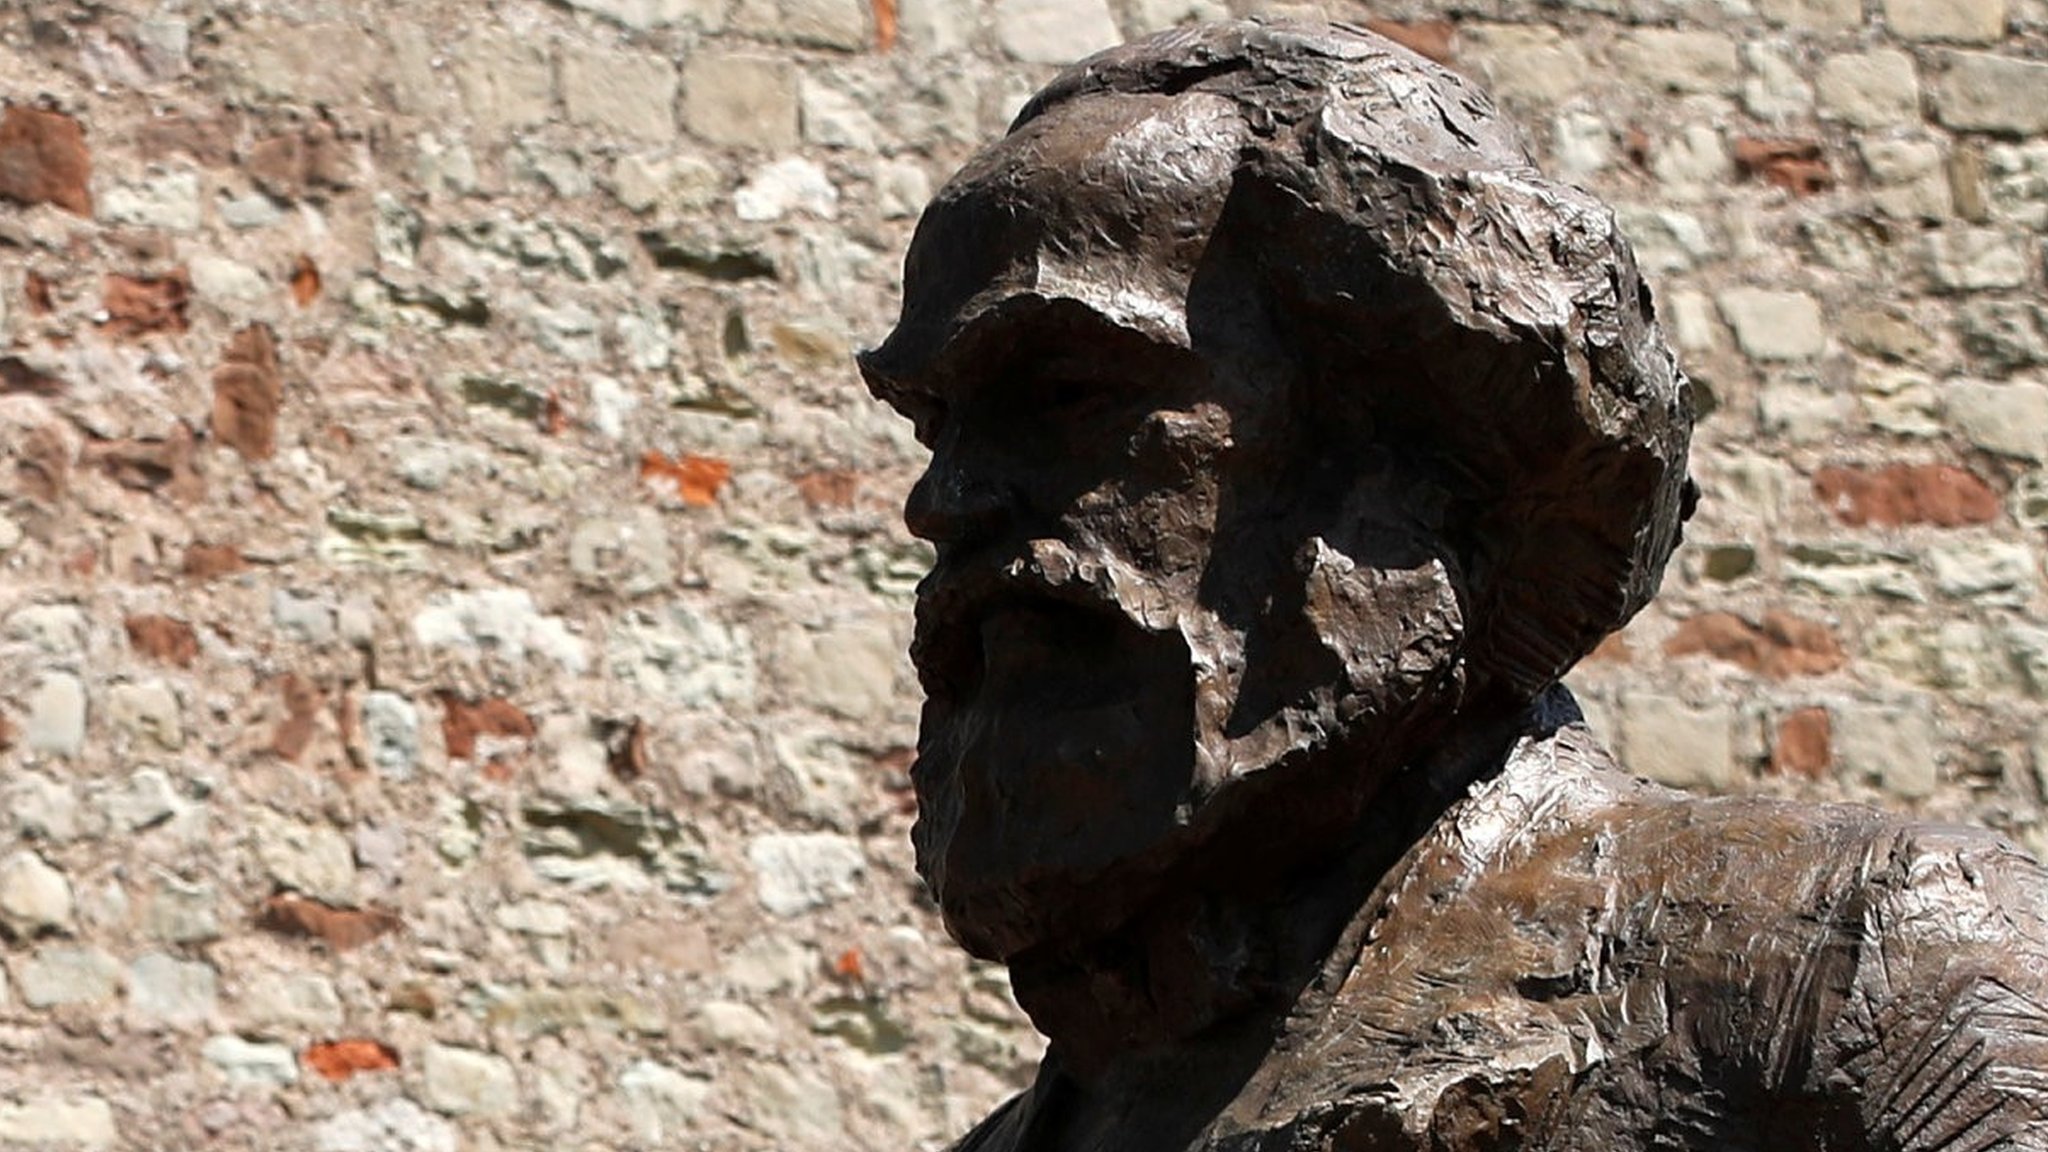 Liangliang988 allemand Excellent Communiste Carl Marx Buste Statue de bronze